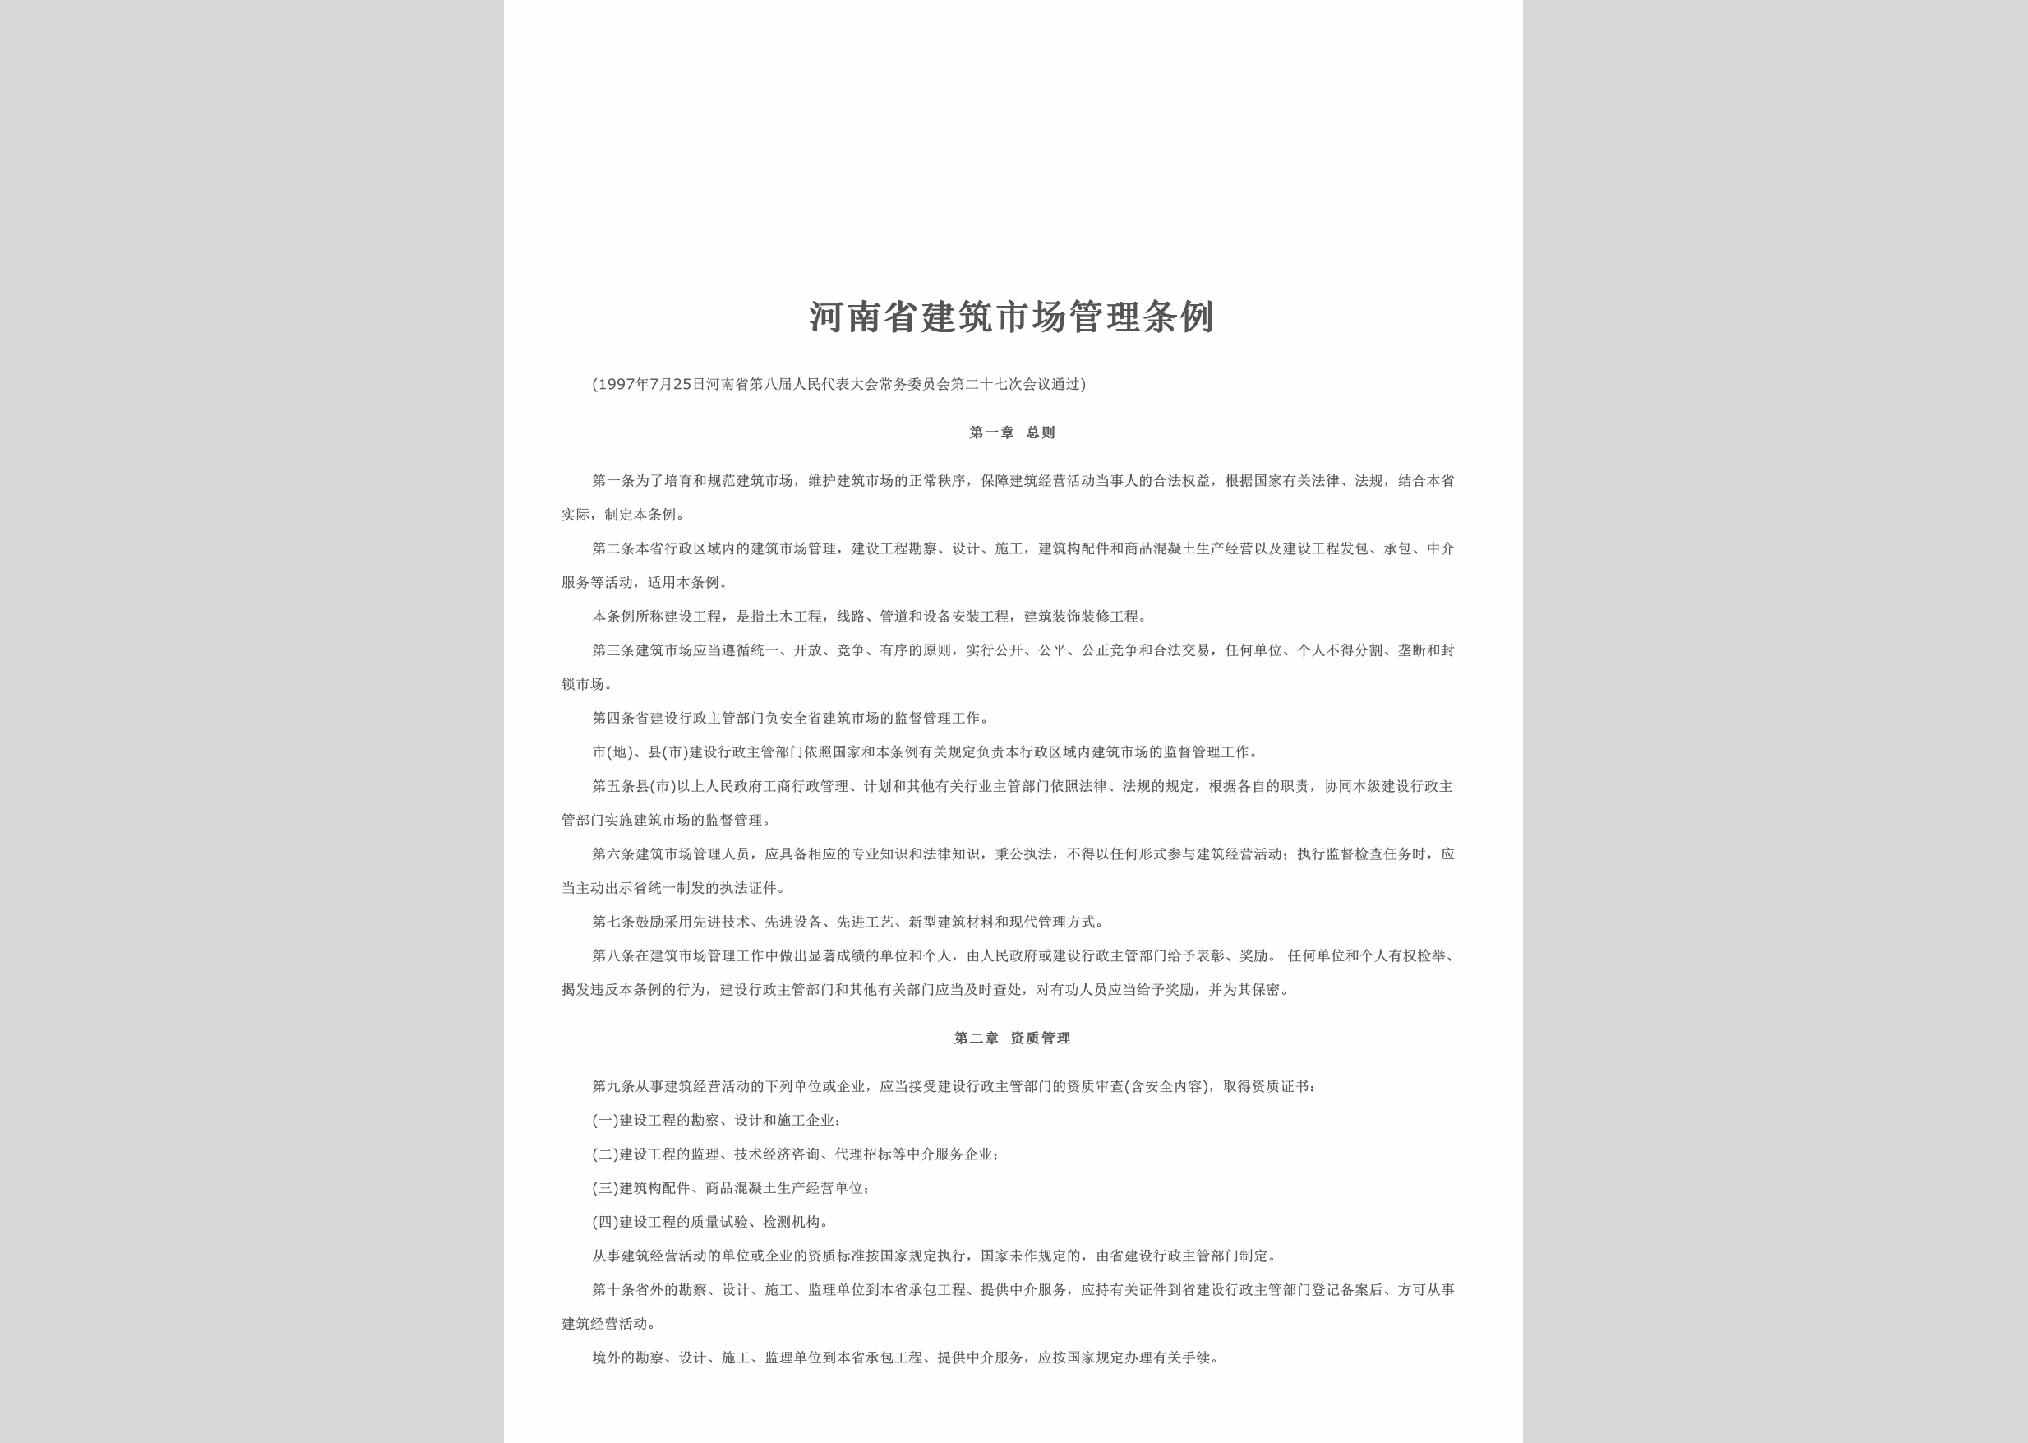 HEN-JZSCGLTL-1997：河南省建筑市场管理条例